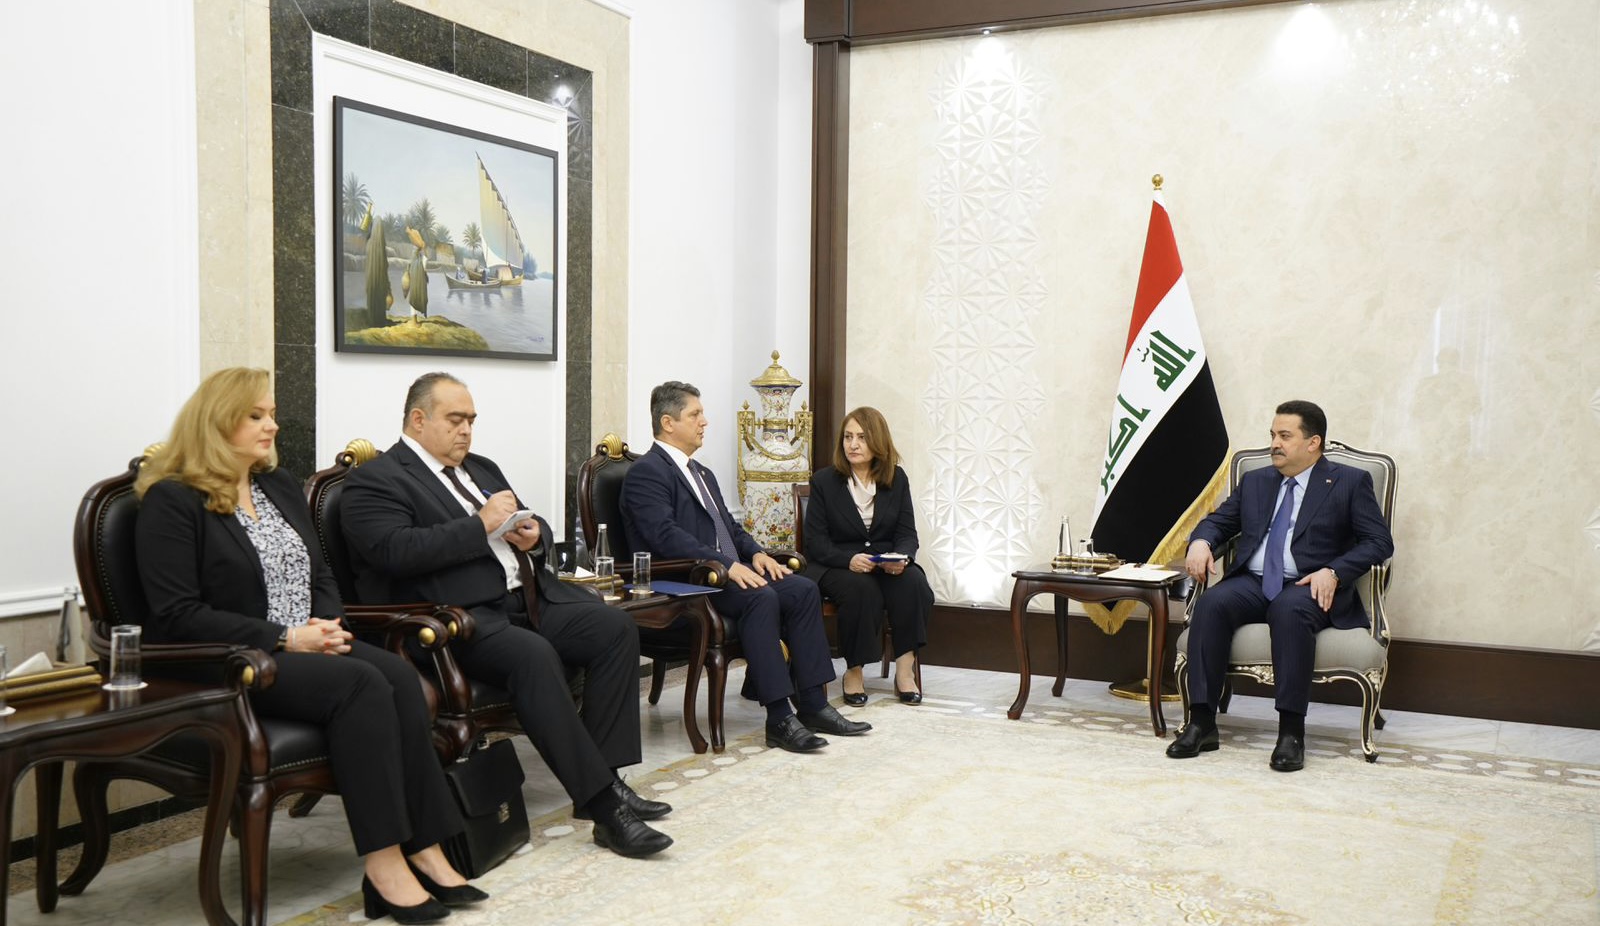 Iraq's Prime Minister invited to visit Romania